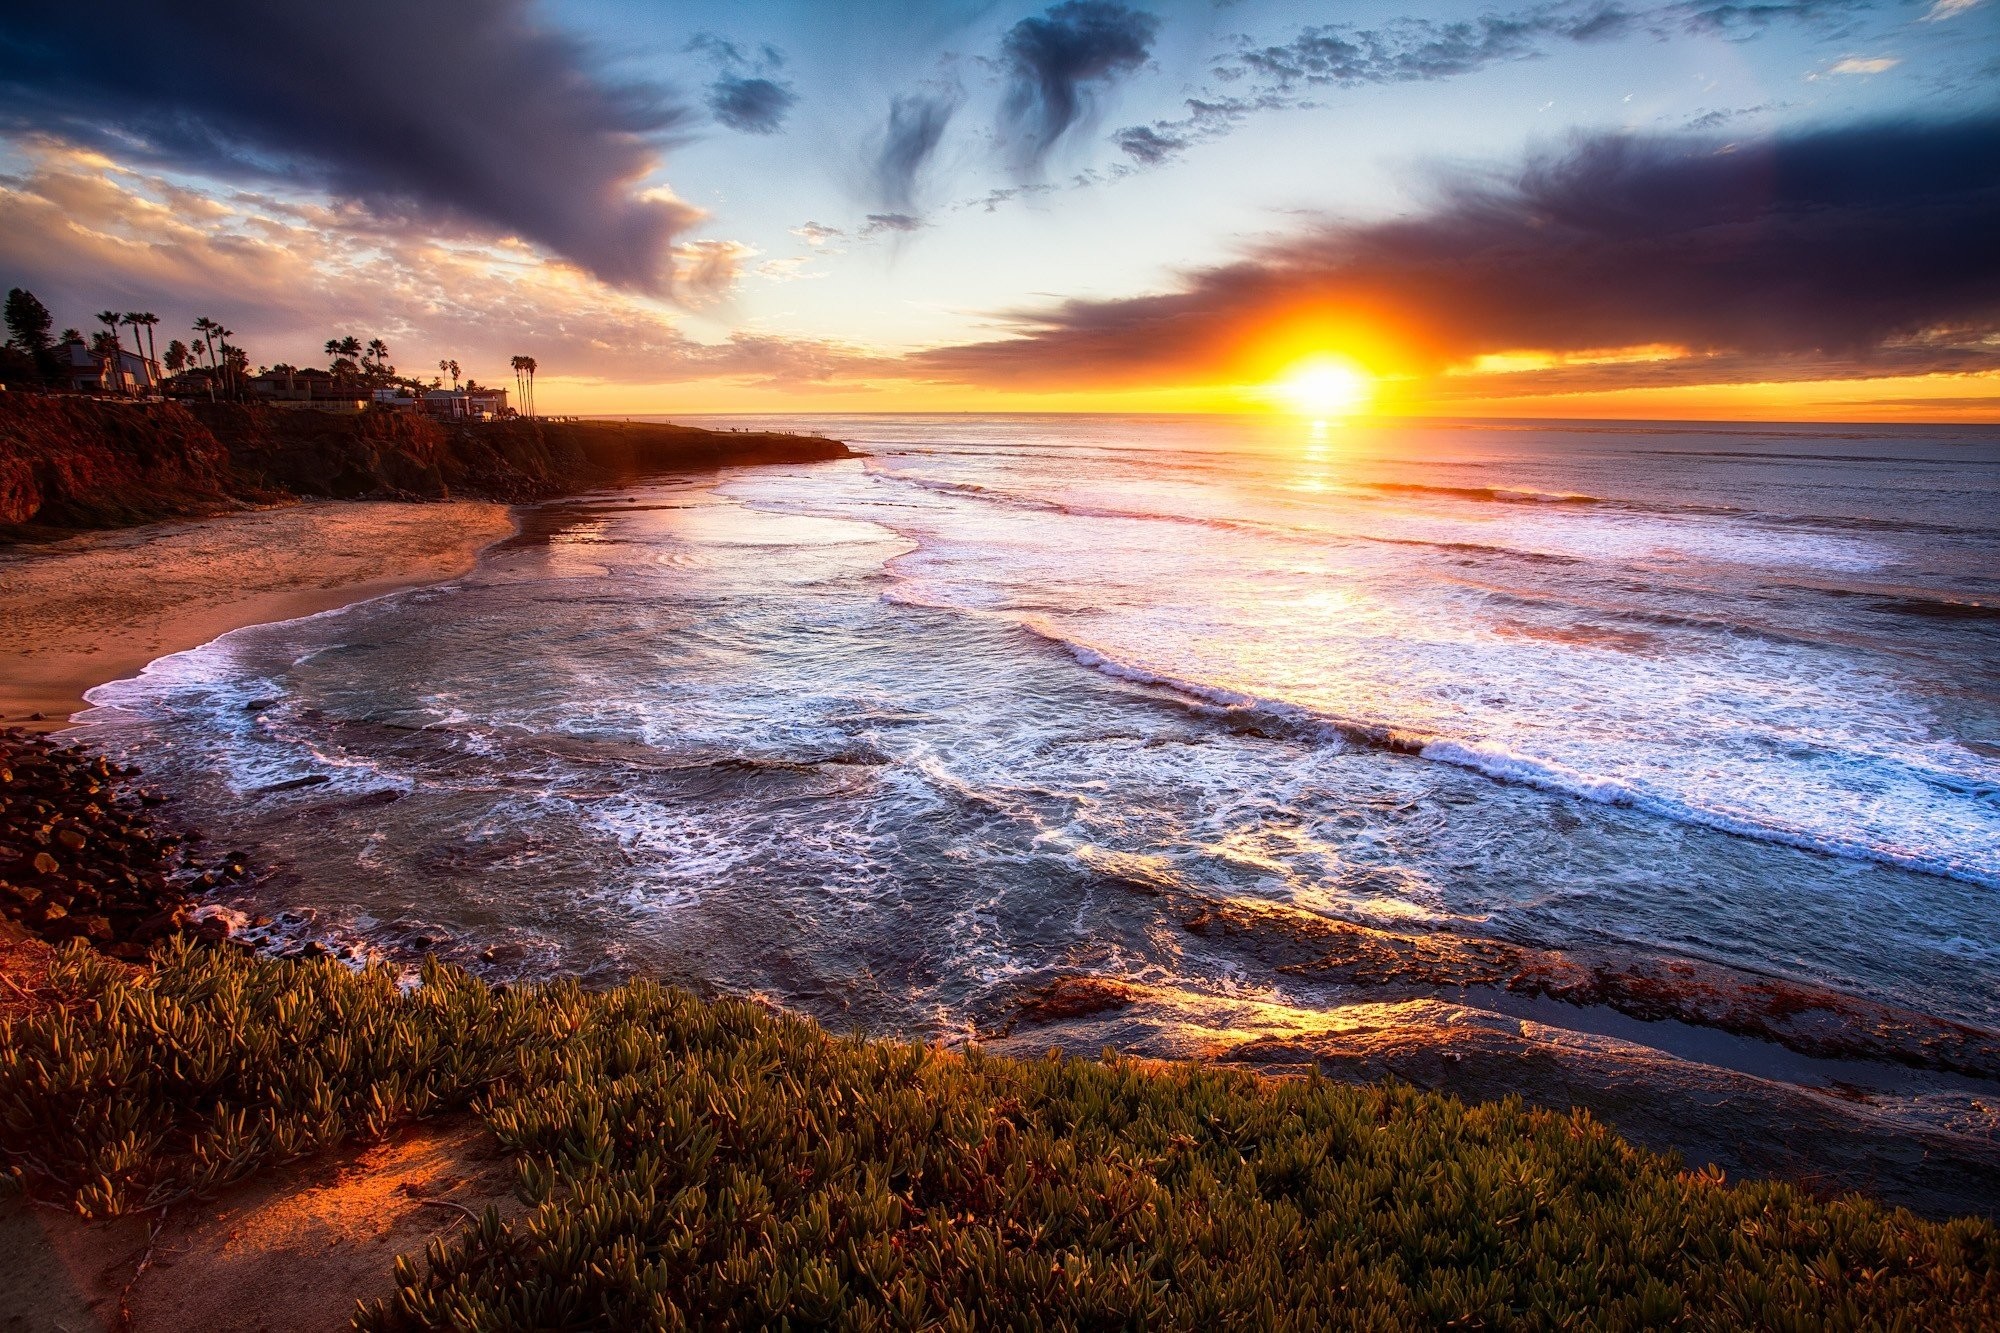 2000x1333 San Diego California sunset landscape wallpaper |  | 291354 |  WallpaperUP